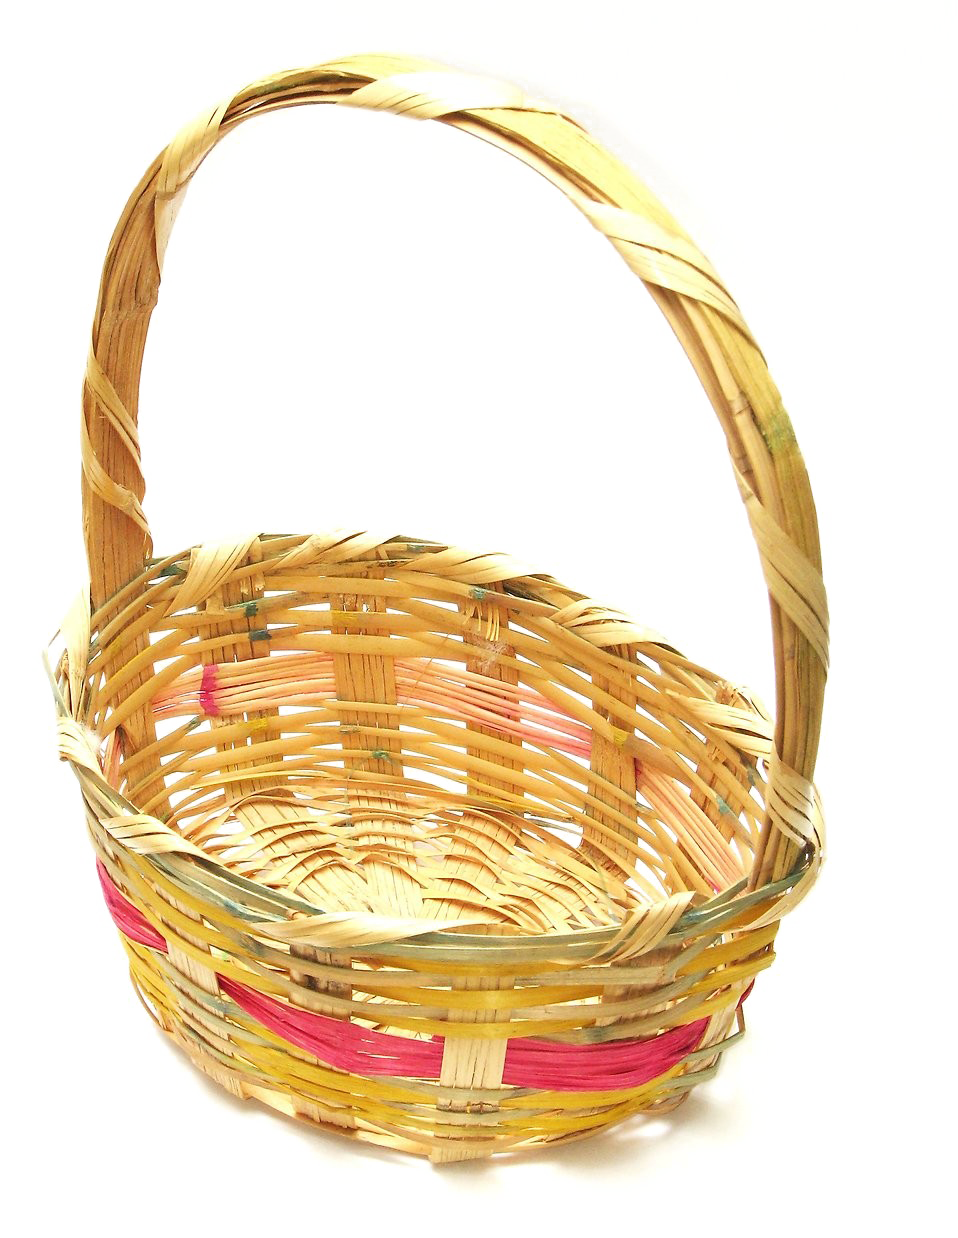 Immagine del PNG del cestino di Pasqua